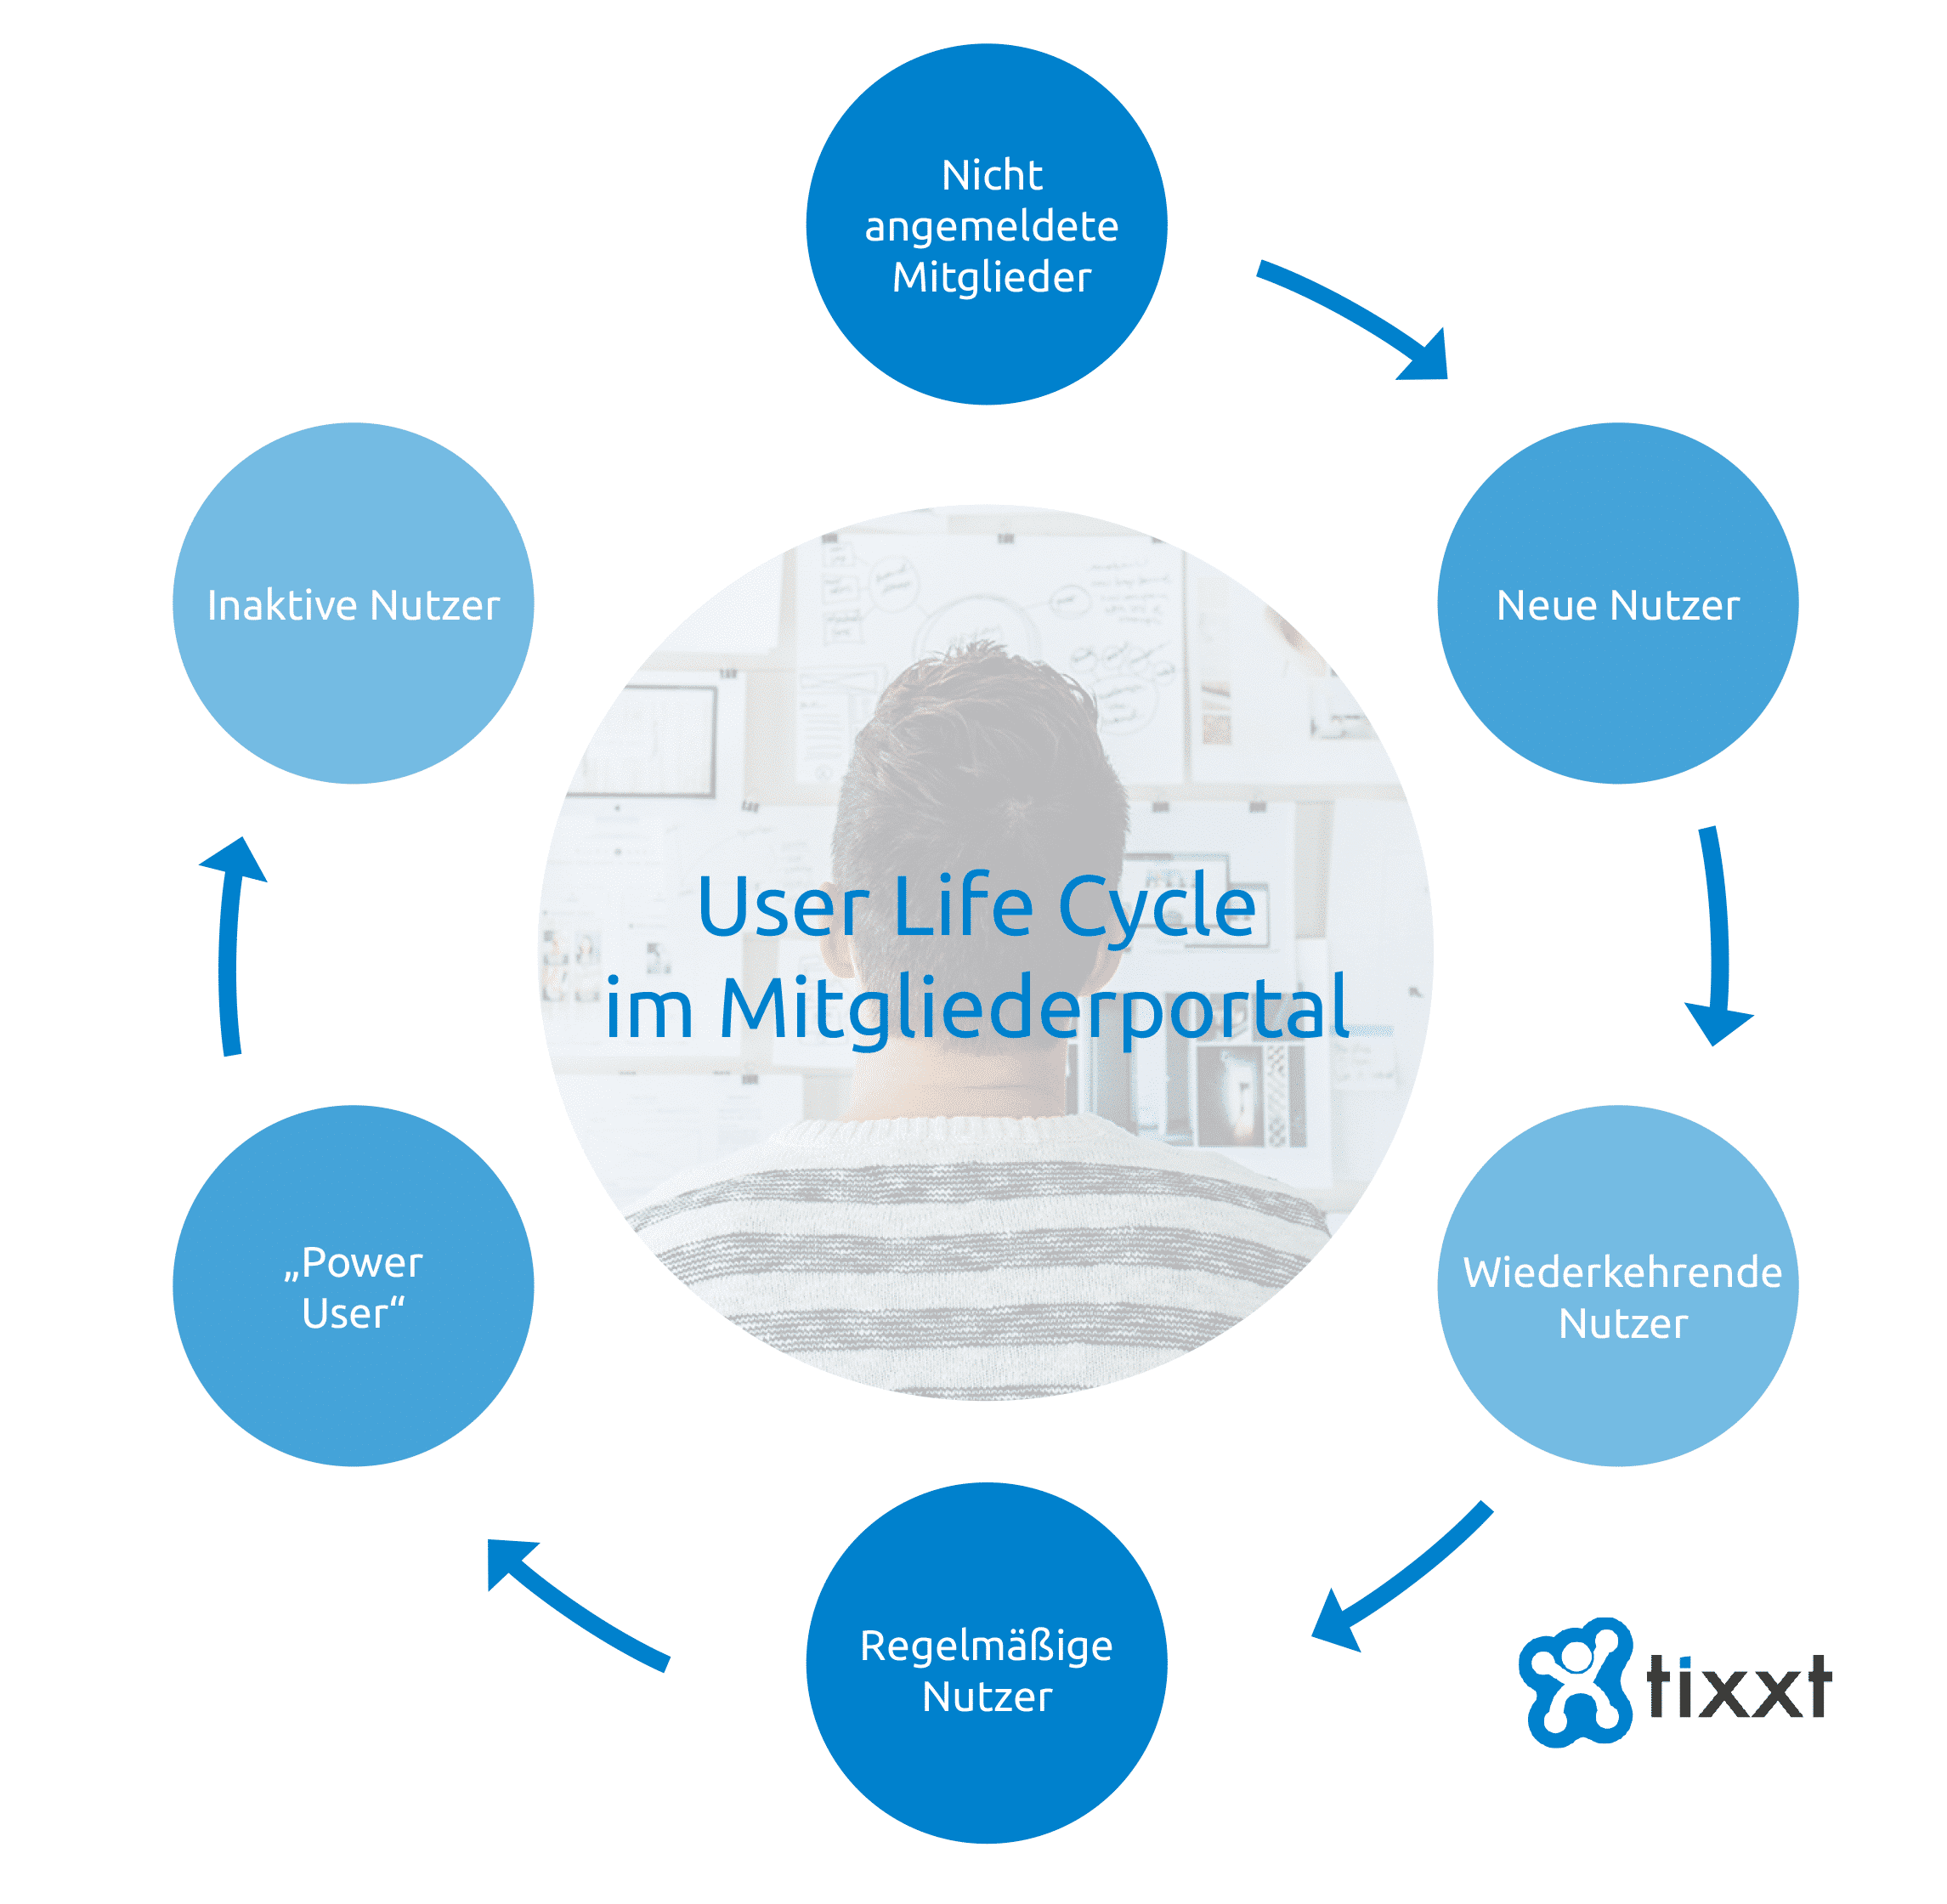 Die sechs Phasen des User Life Cycle im Mitgliederportal